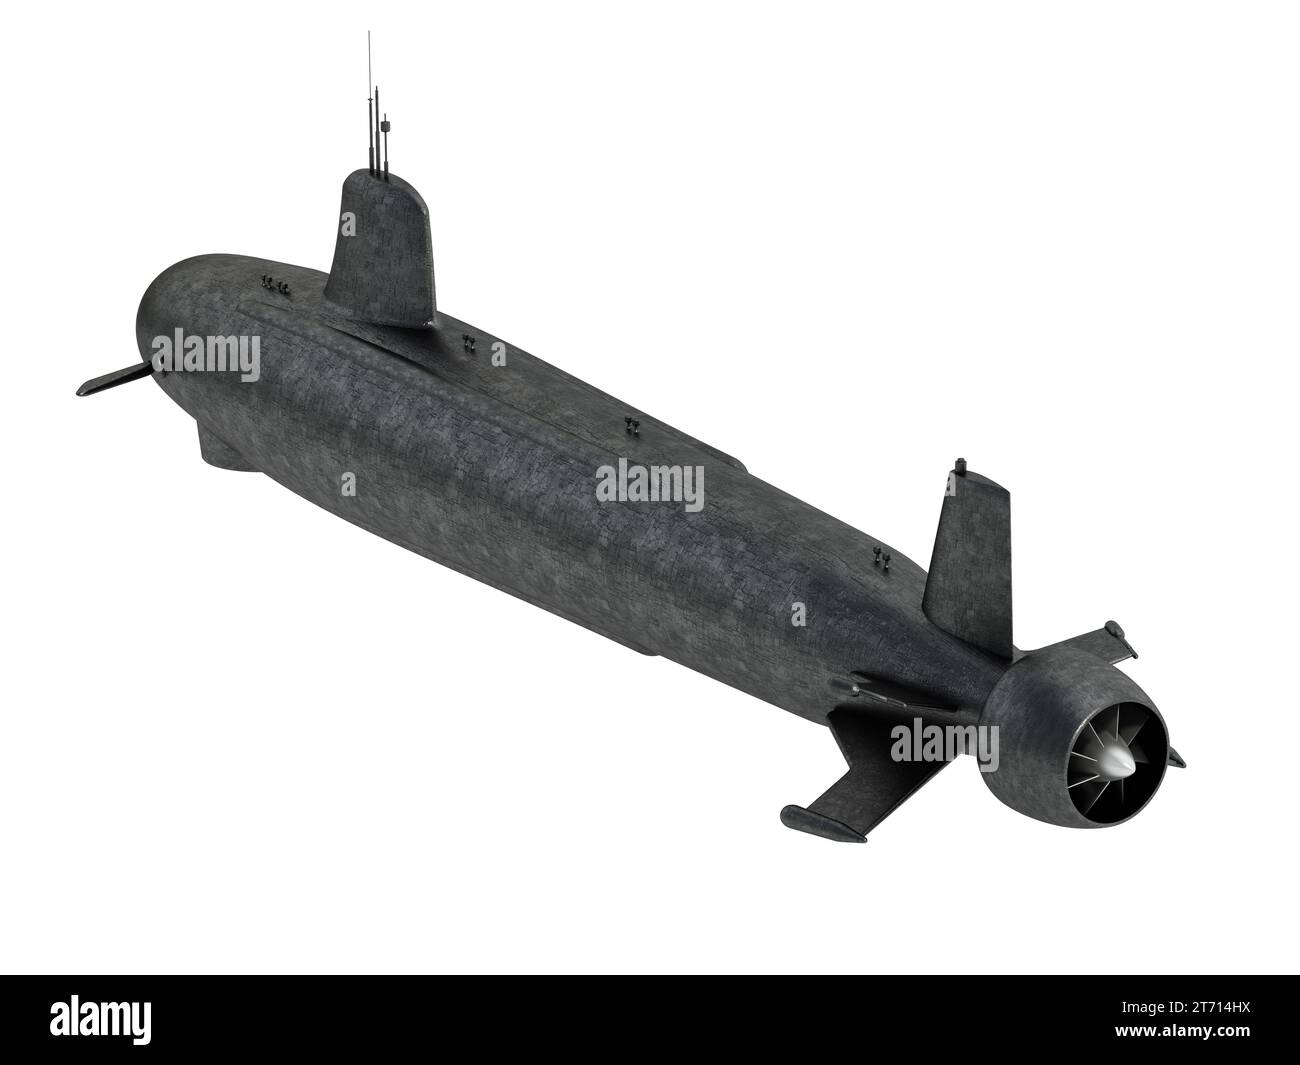 Military submarine isolated on white background. 3D illustration. Stock Photo